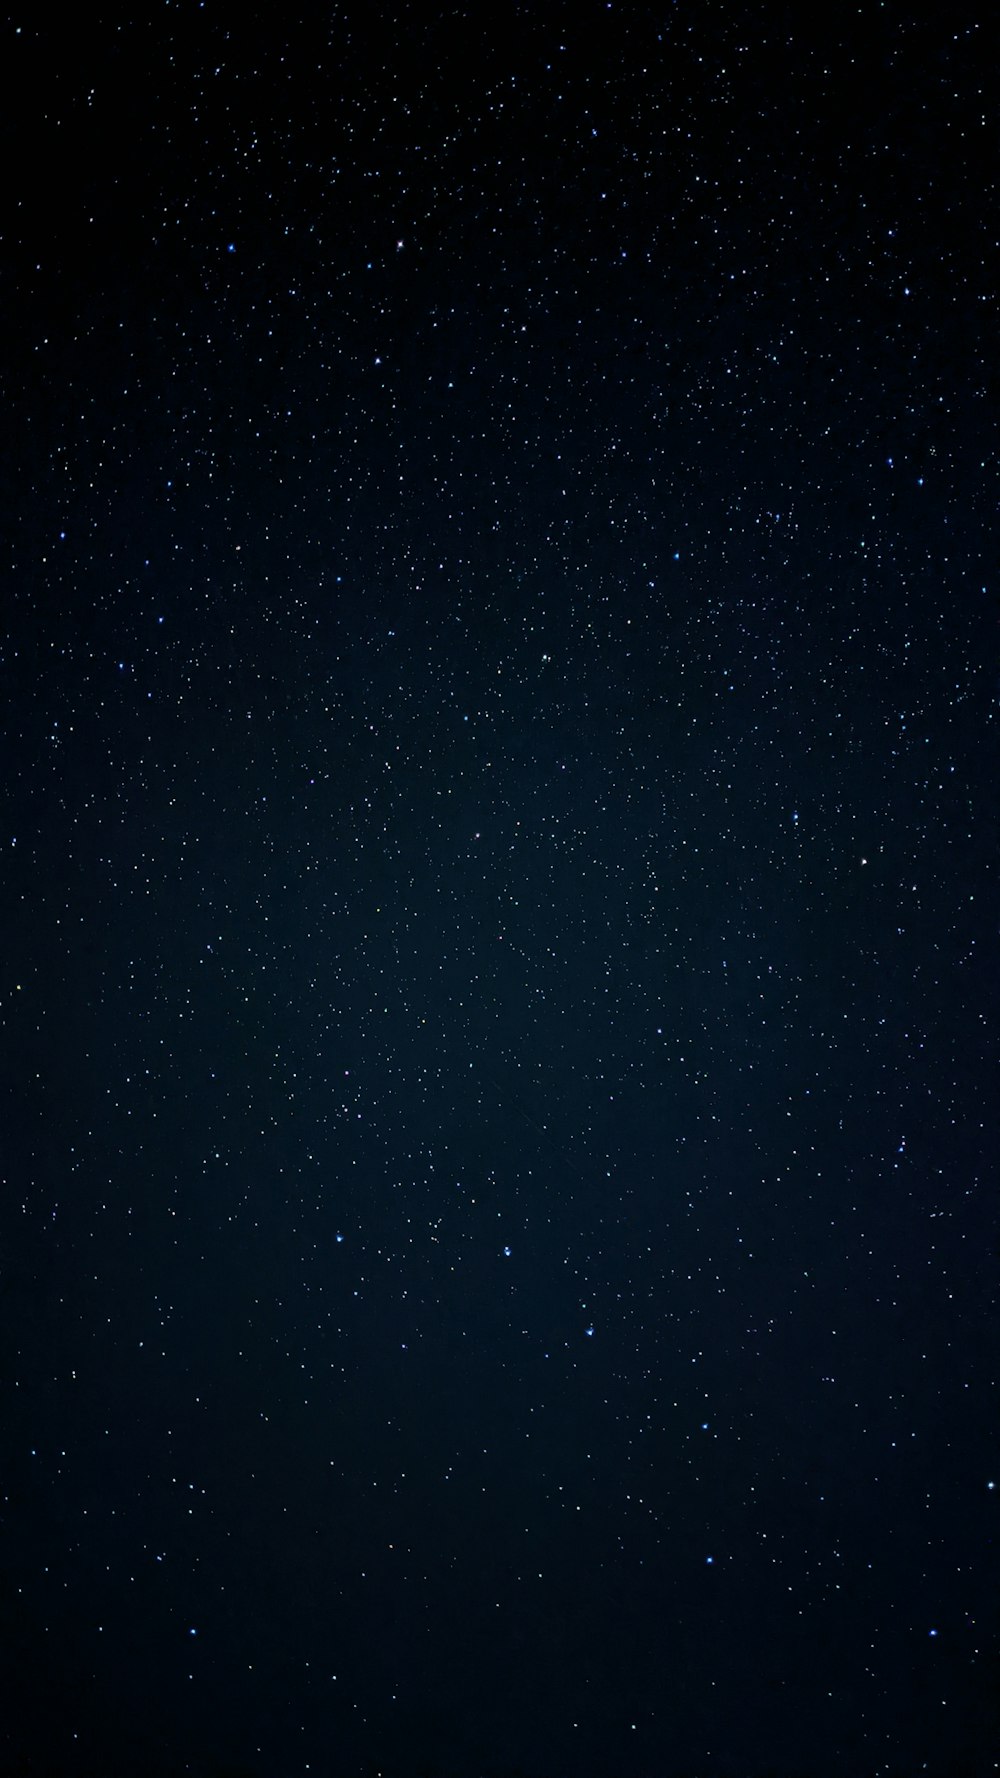 Schwarze und weiße Sterne während der Nachtzeit